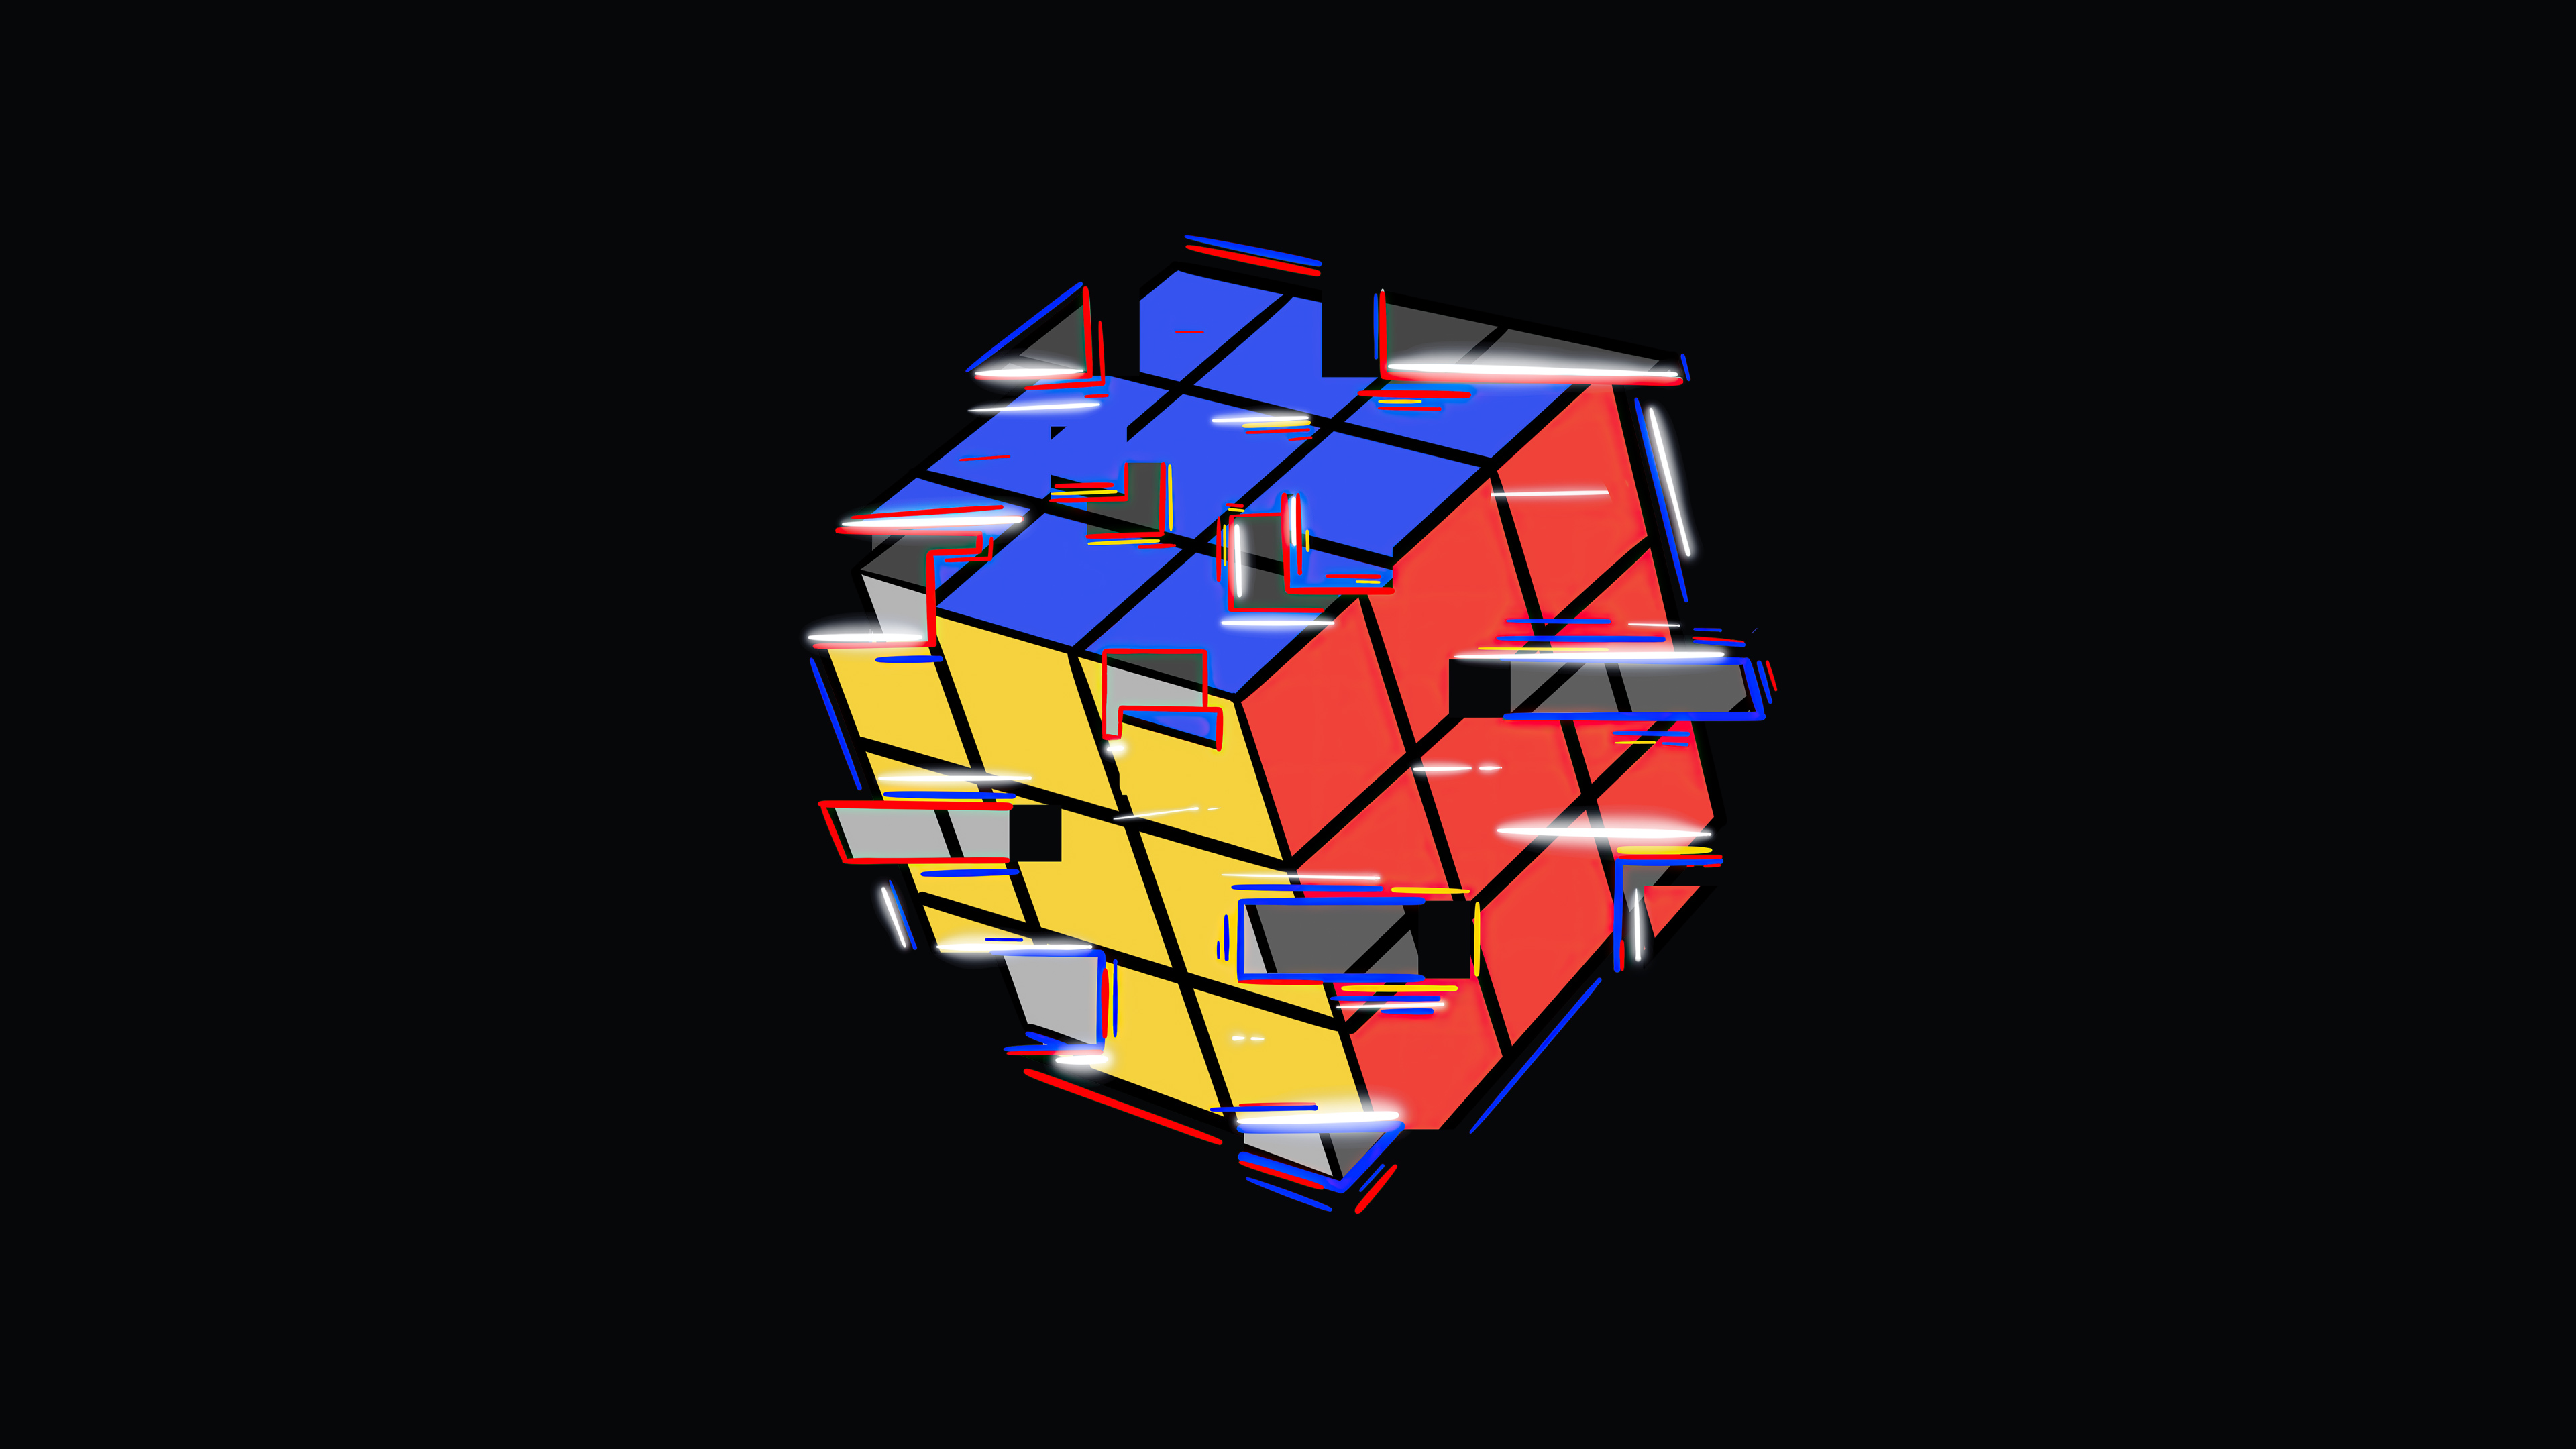 Khám phá thế giới bí ẩn của Rubik cùng với bức ảnh đầy sắc màu này. Sự kết hợp tuyệt vời giữa sự khéo léo và trí tuệ khiến trái tim bạn đập nhanh hơn từng chút.